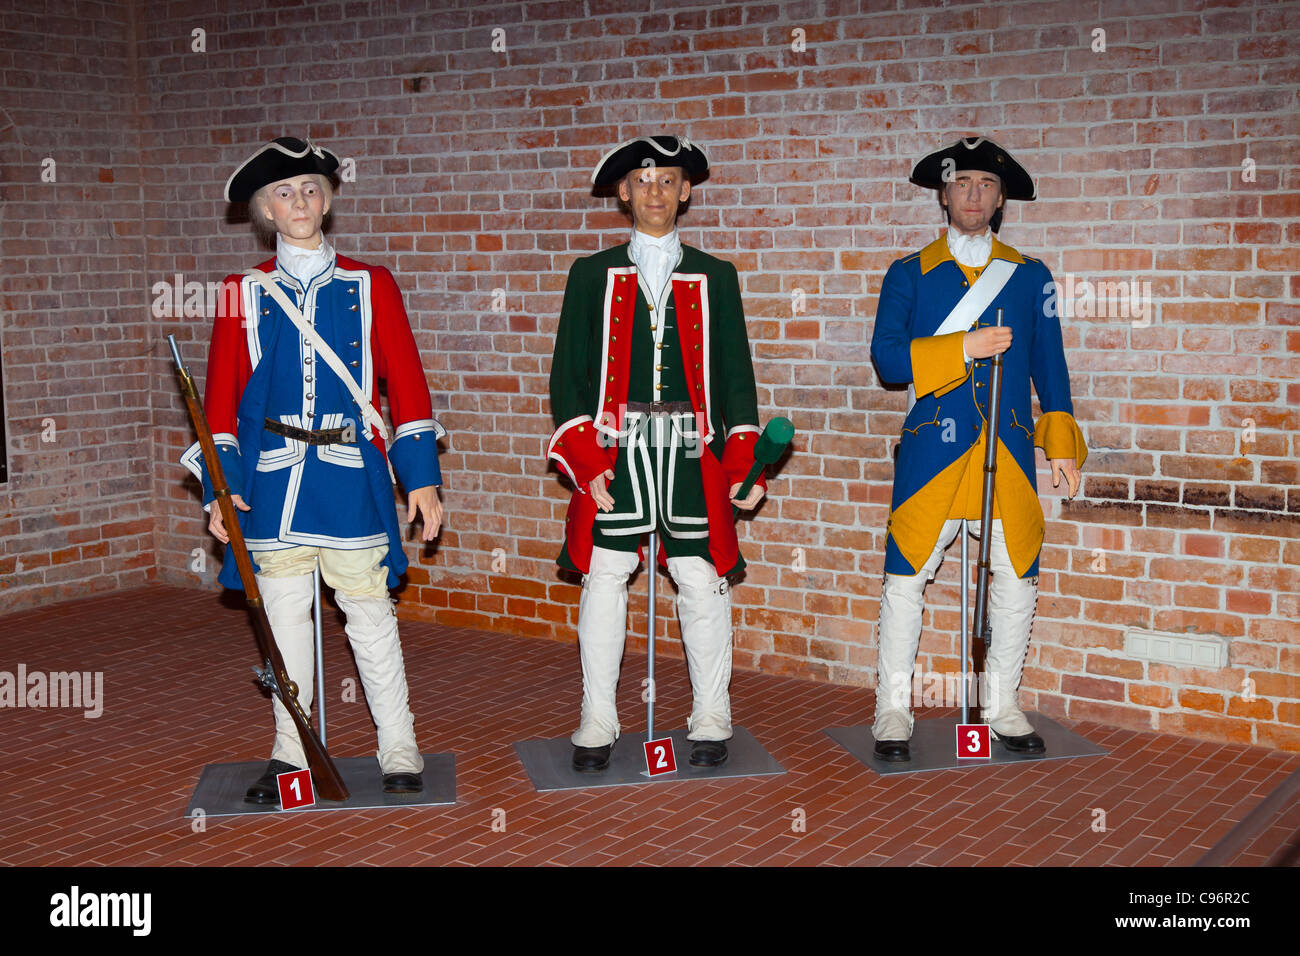 1,2 - Des soldats de l'Armée de la Couronne à partir de la période de la Grande Guerre du Nord (1700-1721). 3 - Un soldat de l'infanterie suédoise à partir de cette période. Banque D'Images